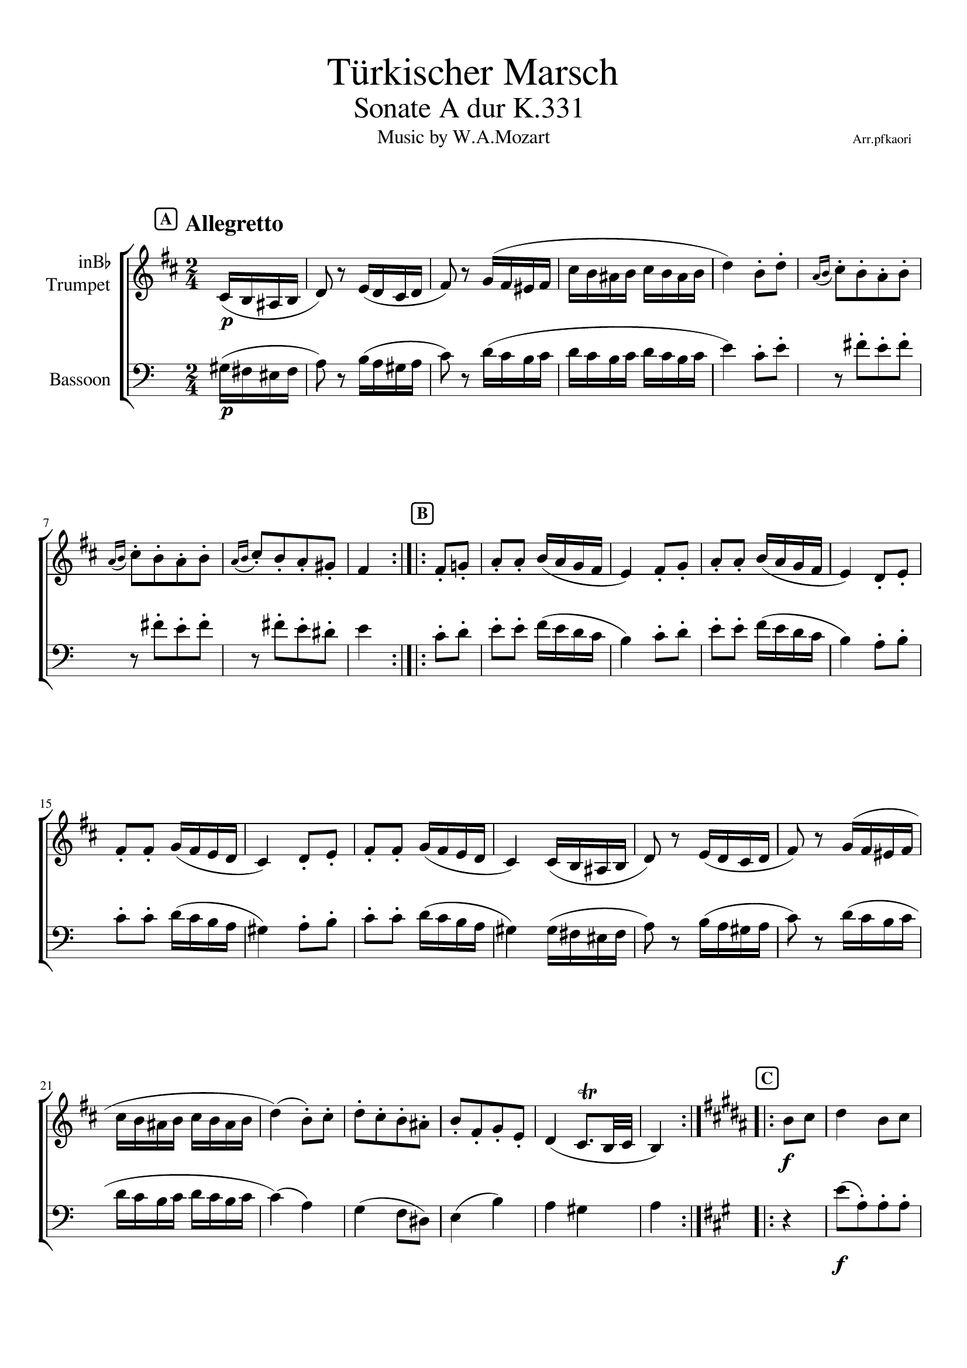 モーツァルト - トルコ行進曲 (トランペット&ファゴット/無伴奏) by pfkaori